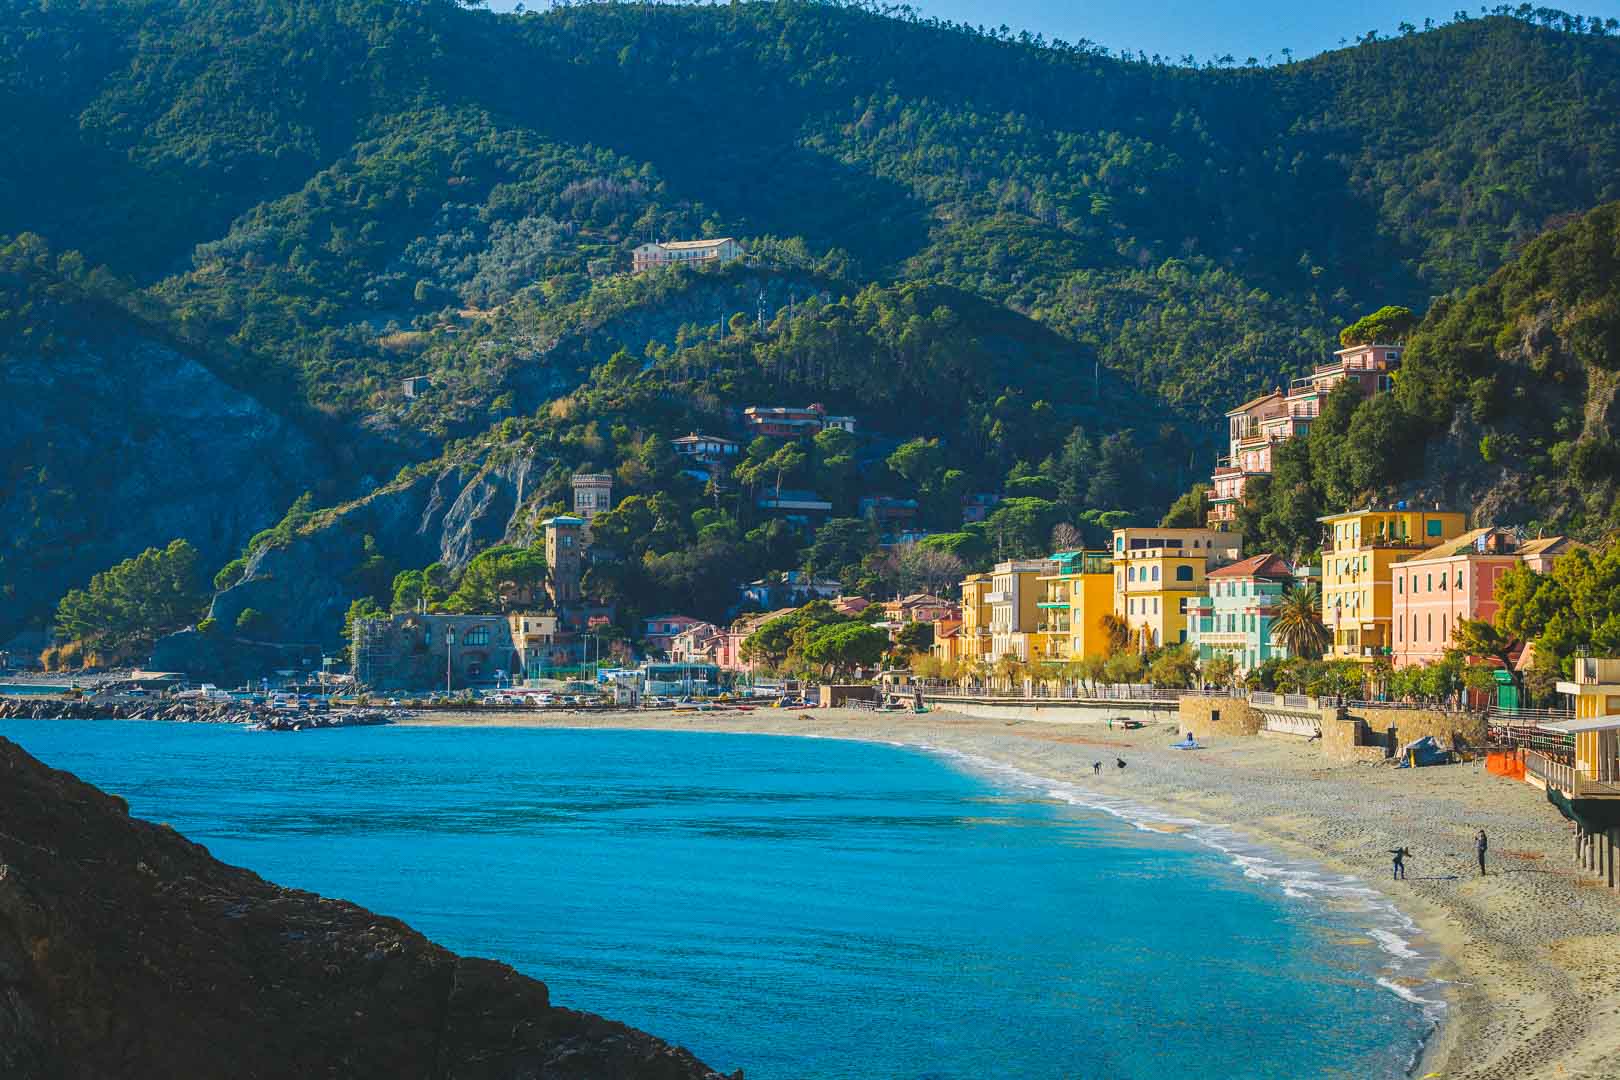 Monterosso al Mare, Cinque Terre – The Place to Relax